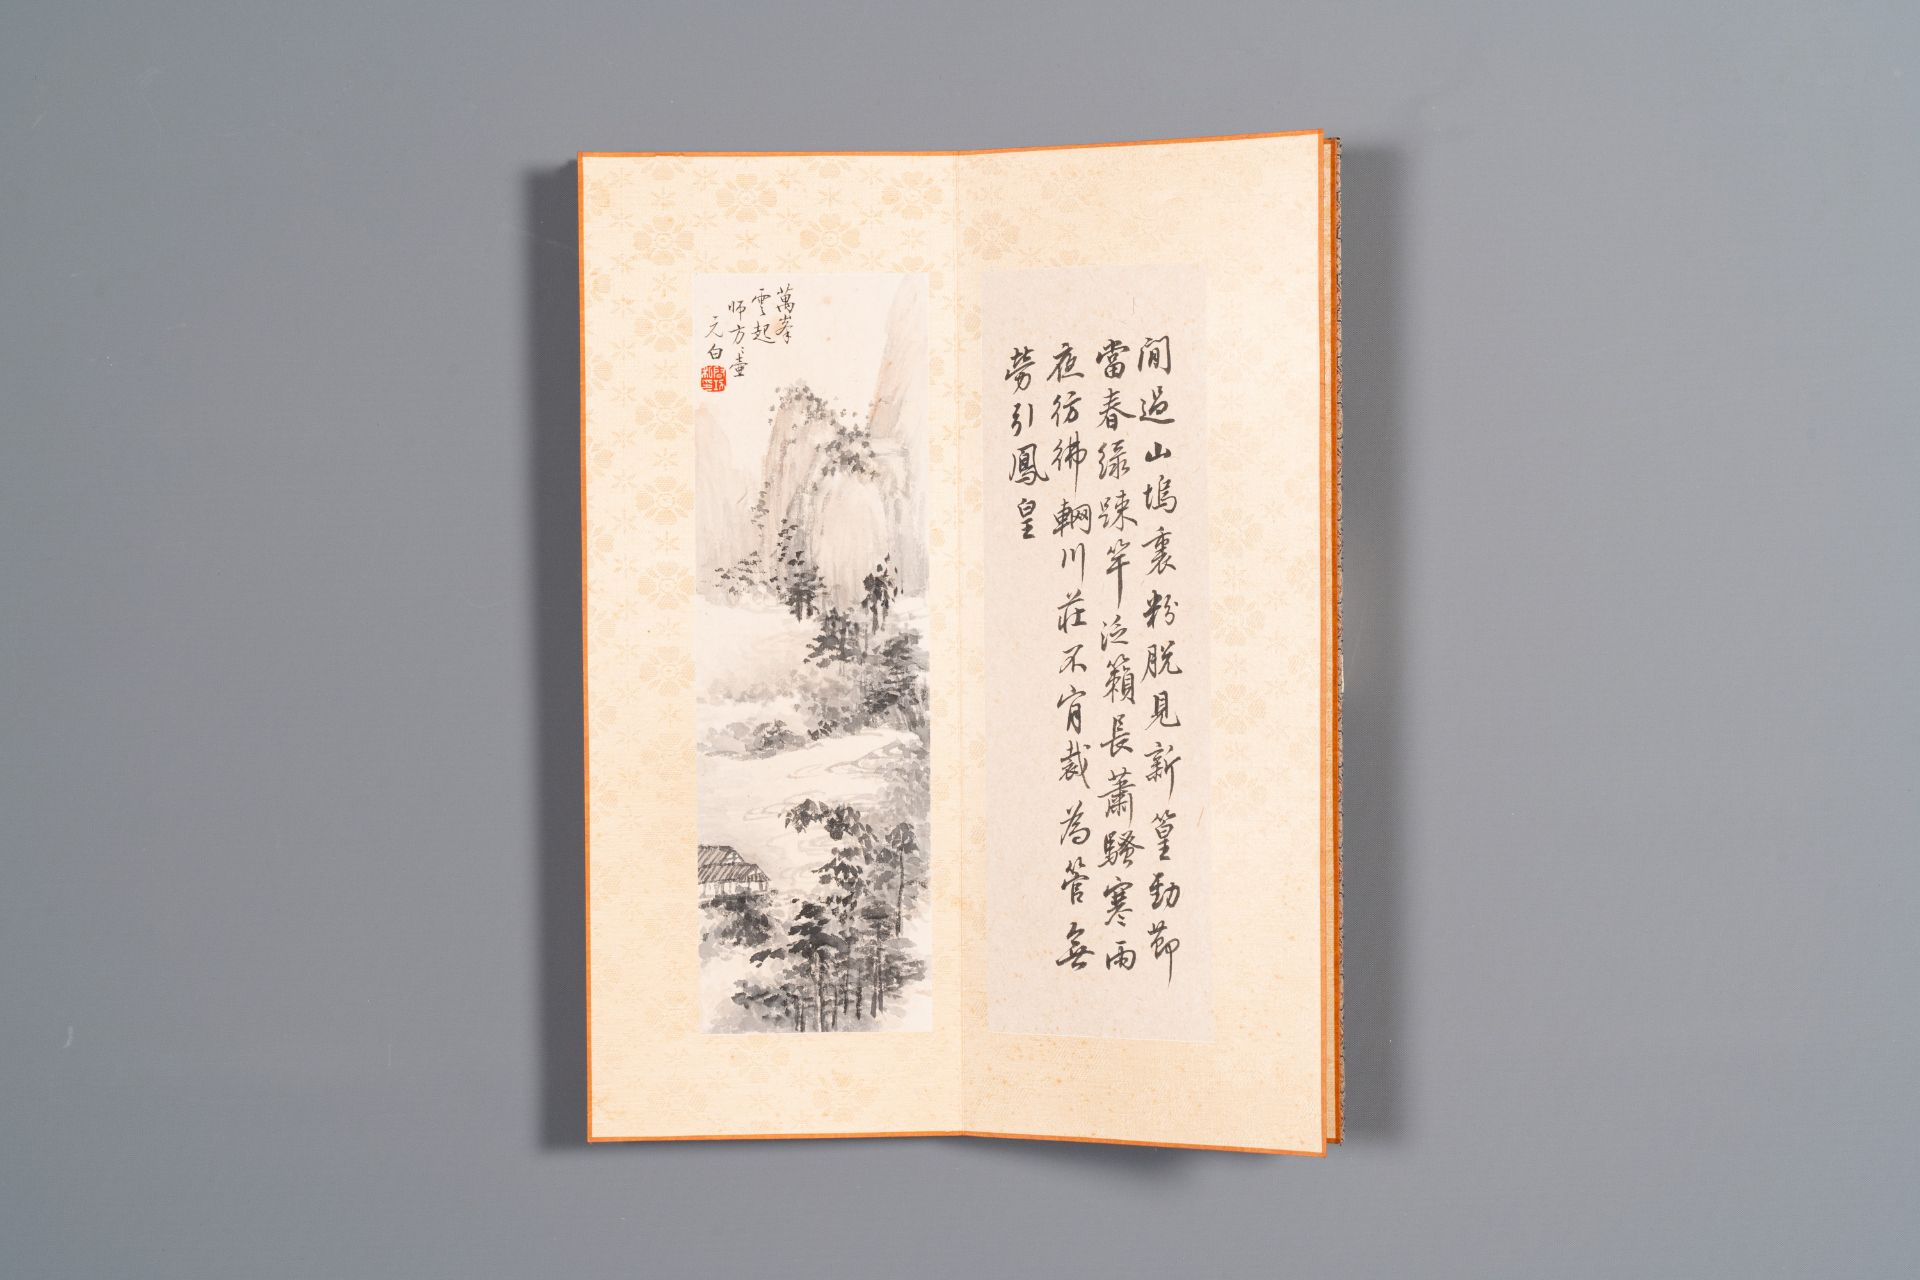 Three albums: 'Jiang Hanting æ±Ÿå¯’æ±€ (1904-1963), Lin Sanzhi æž—æ•£ä¹‹ (1898-1989) and Qi Gong å¯ - Bild 20 aus 23